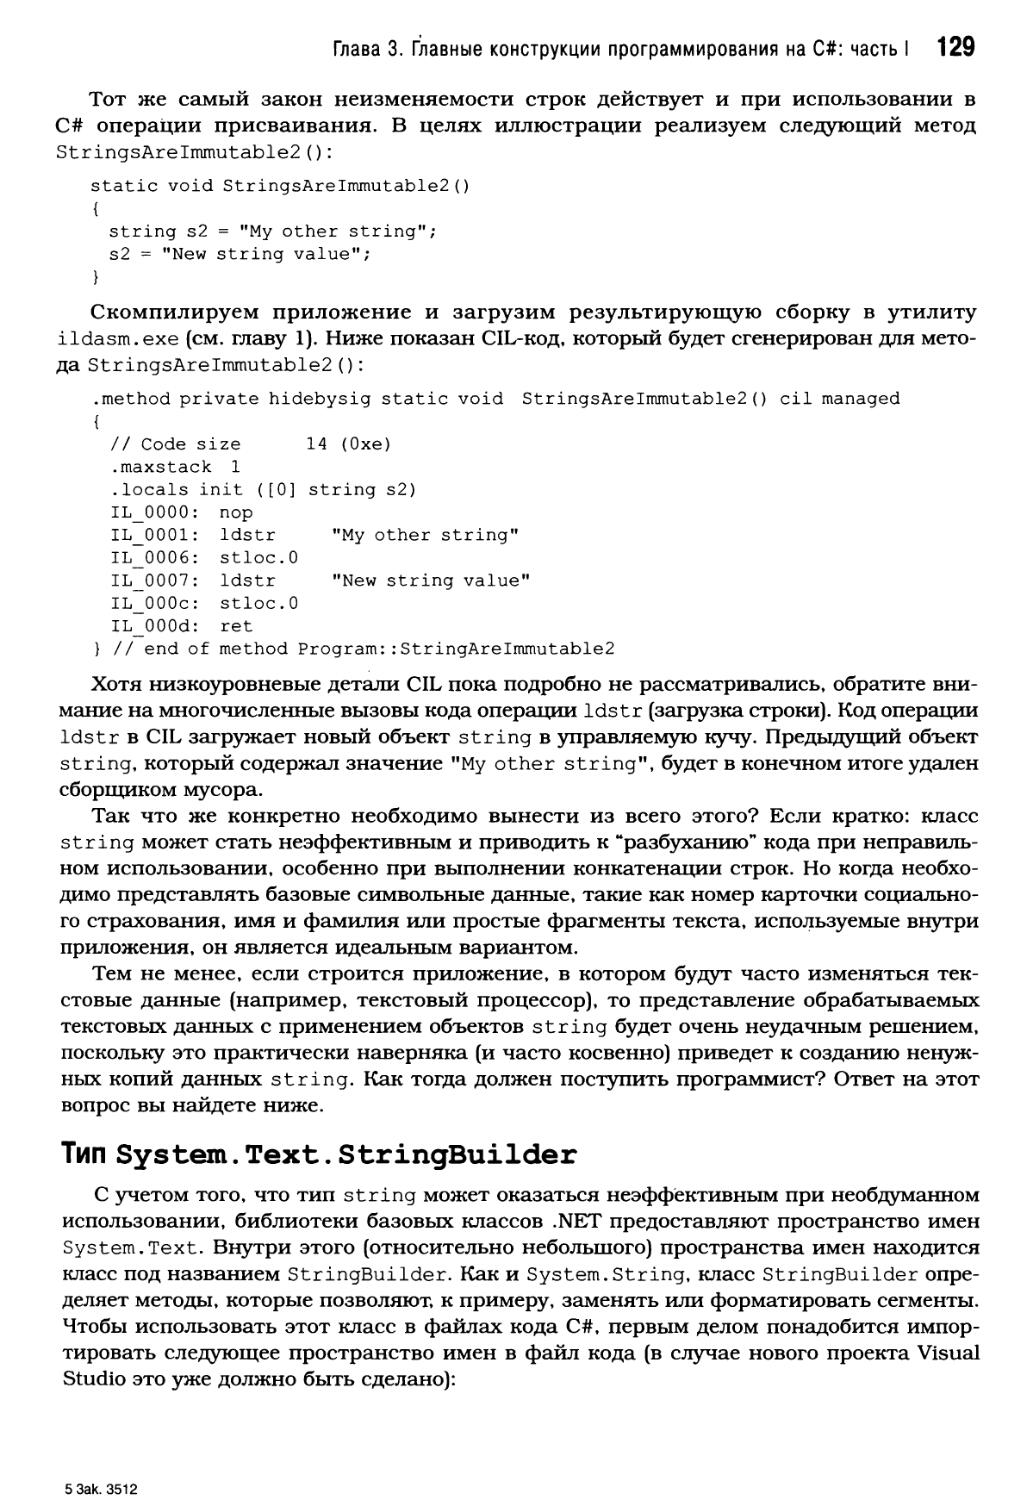 Тип System.Text.StringBuilder